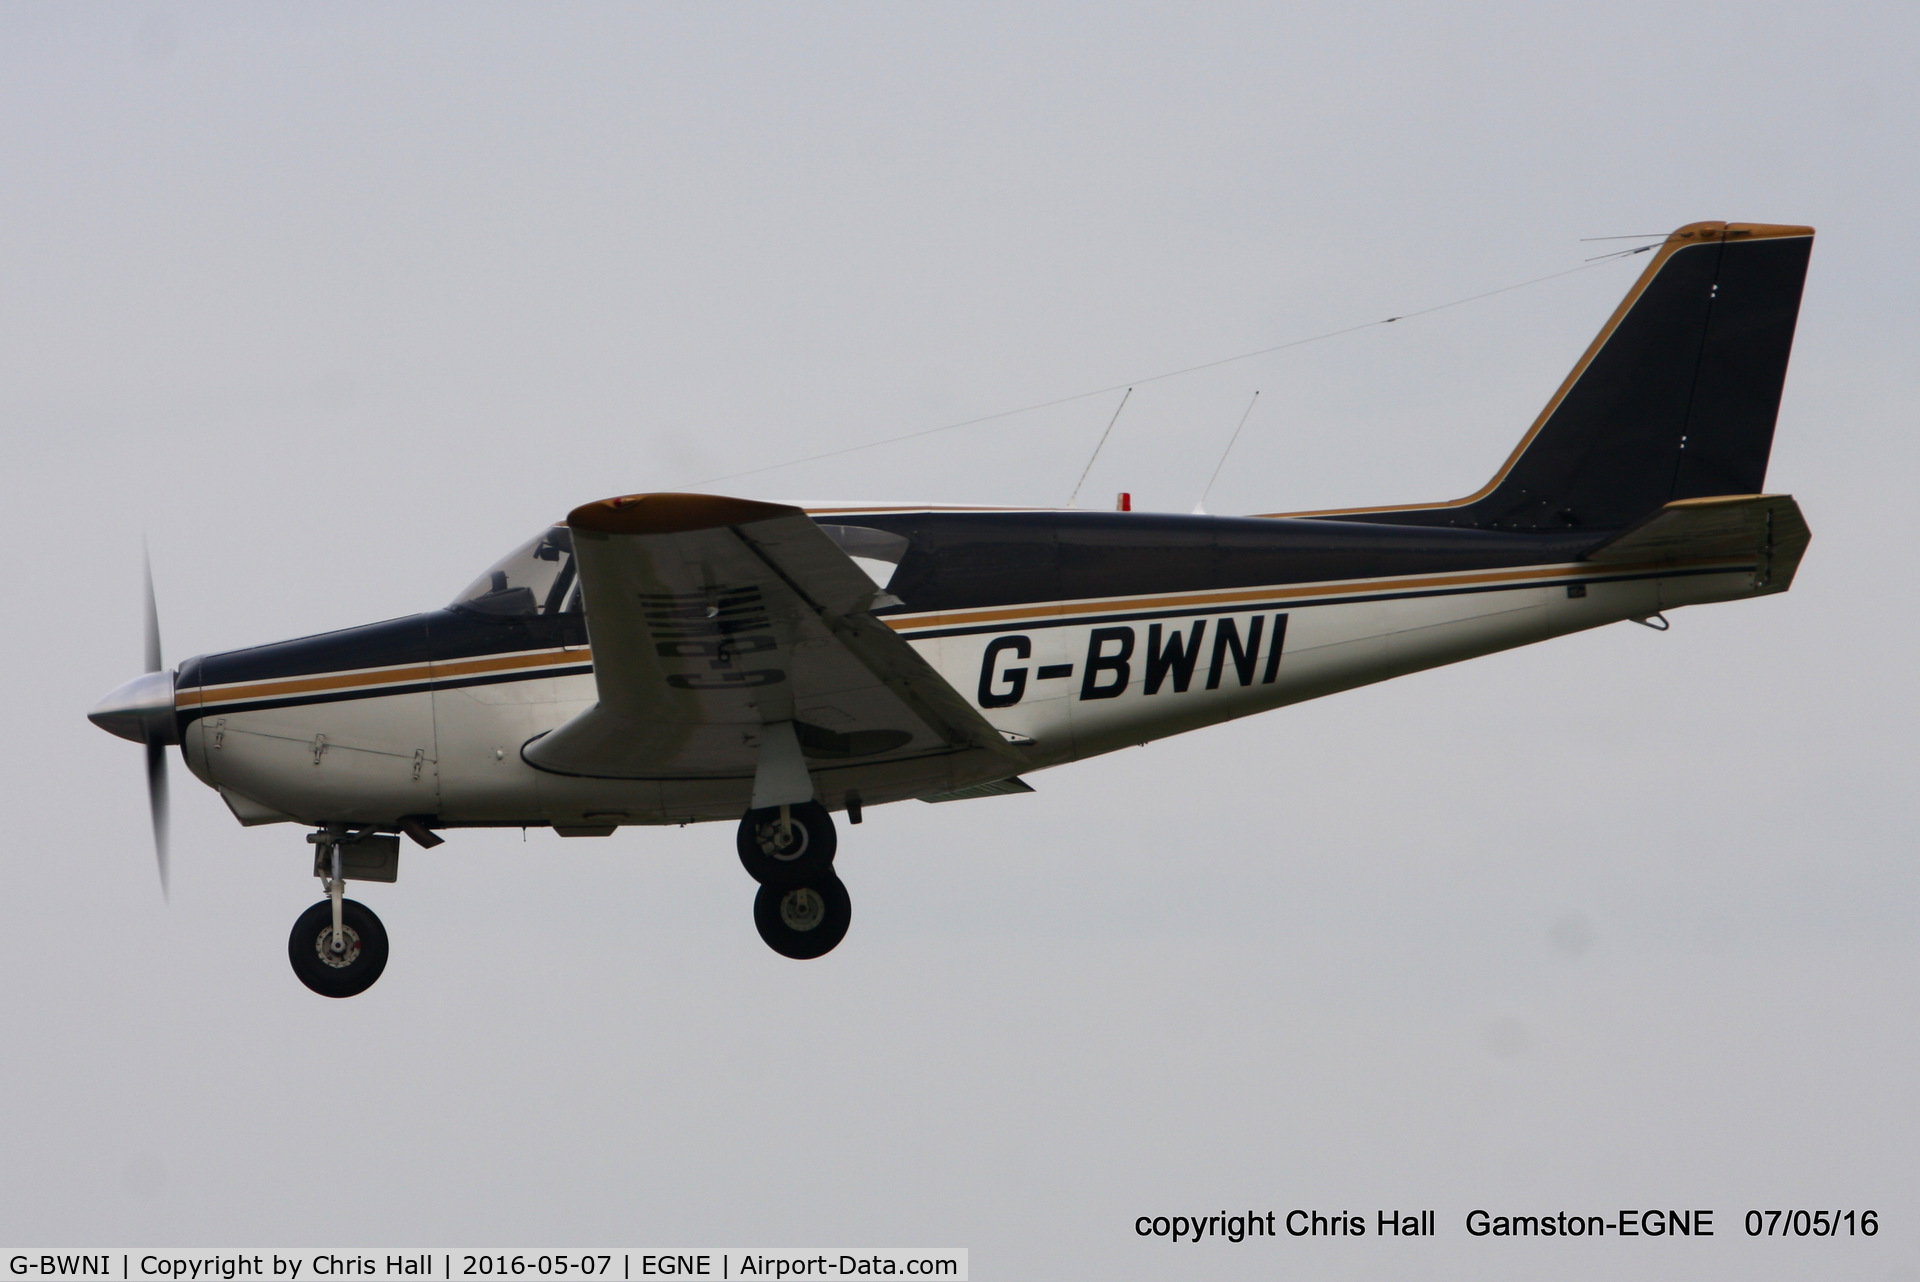 G-BWNI, 1958 Piper PA-24-180 Comanche Comanche C/N 24-136, at Gamston